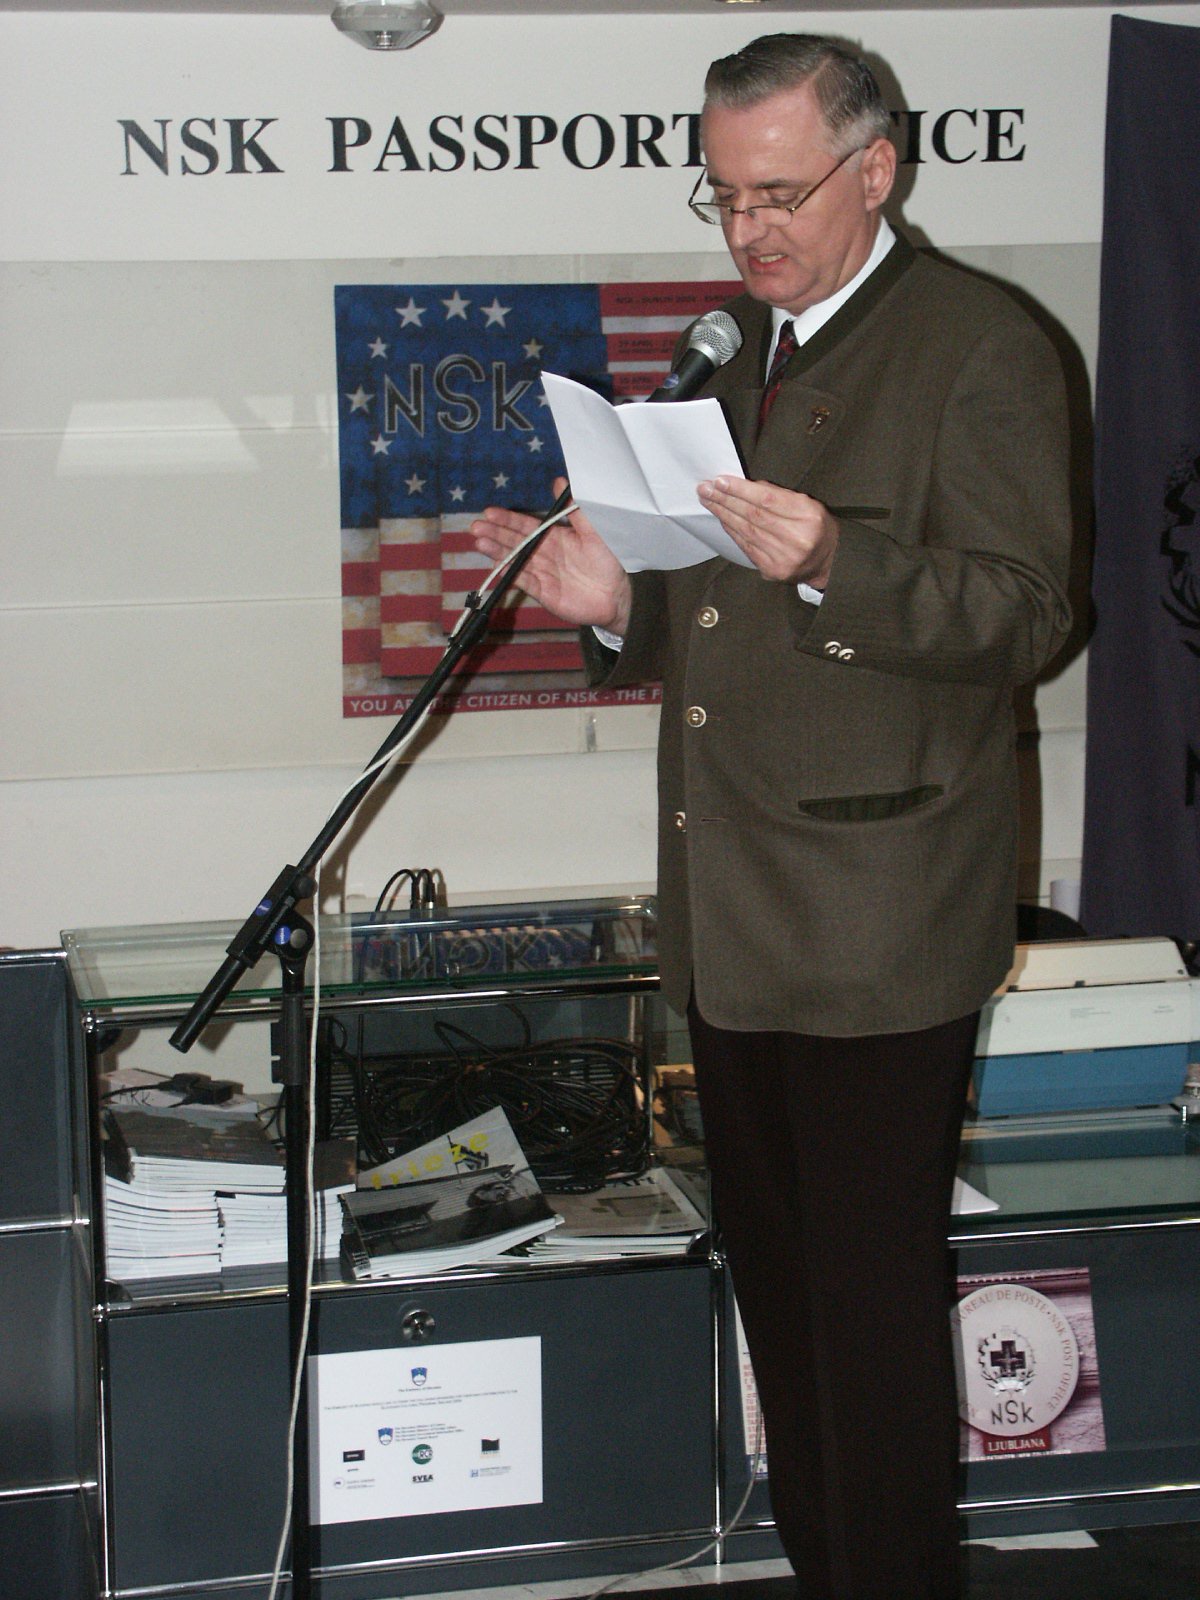 Peter Mlakar at the opening og the NSK Passport Office in Dublin, 2004